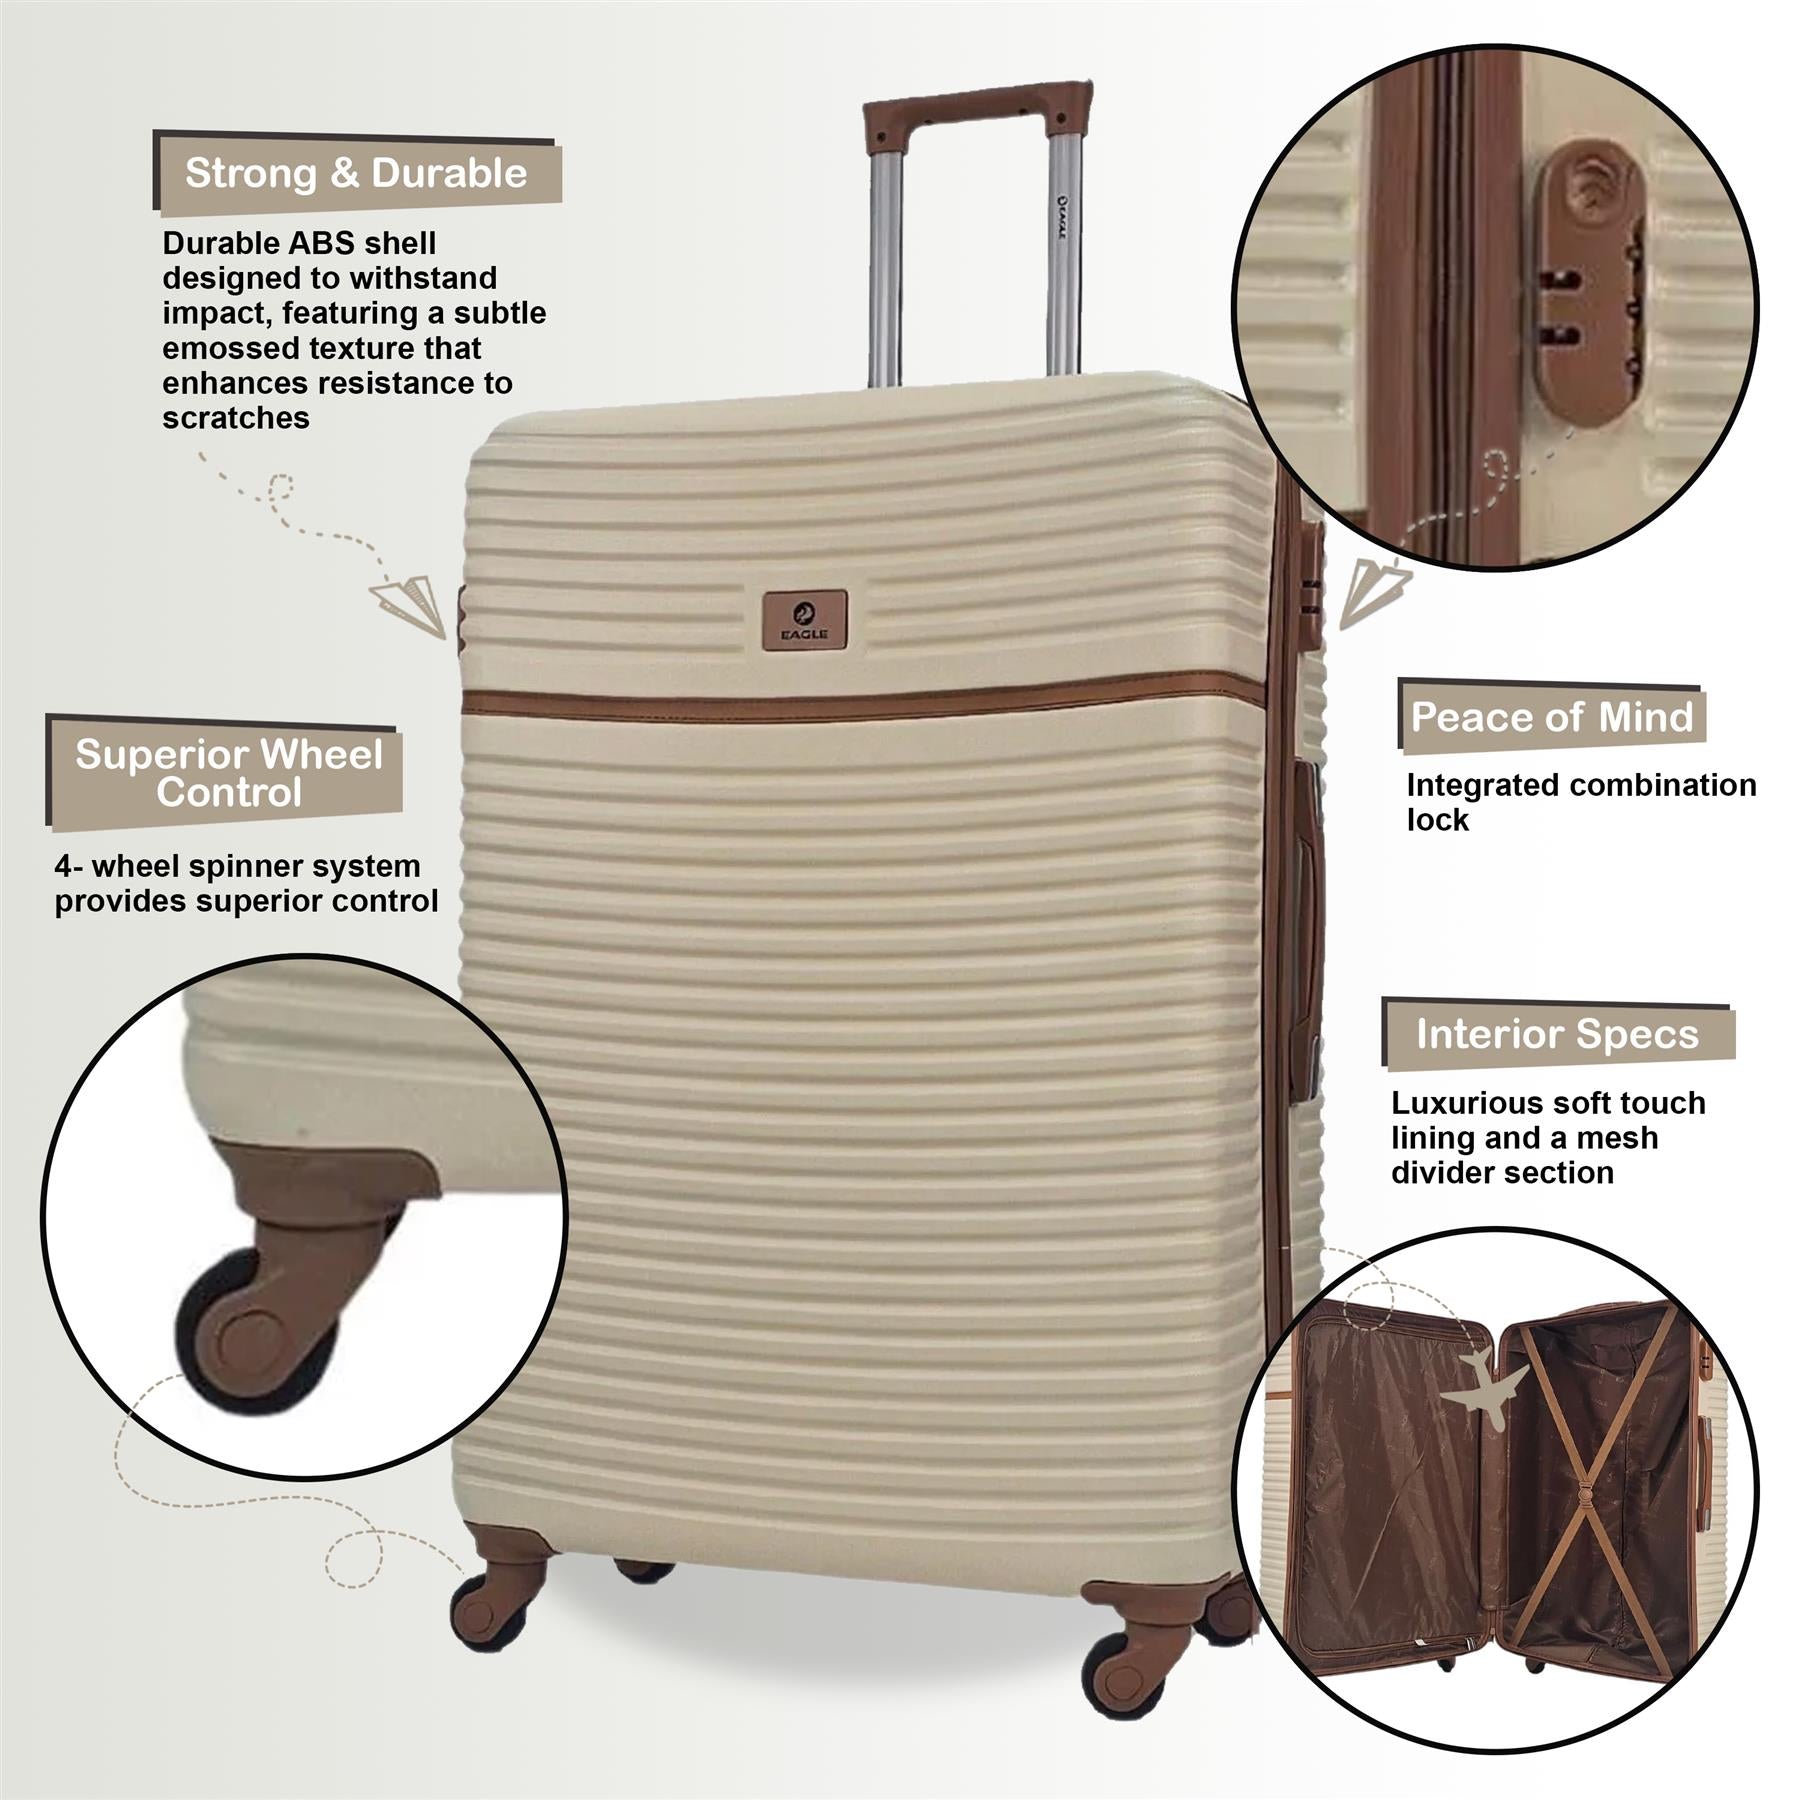 Bridgeport Medium Hard Shell Suitcase in Cream